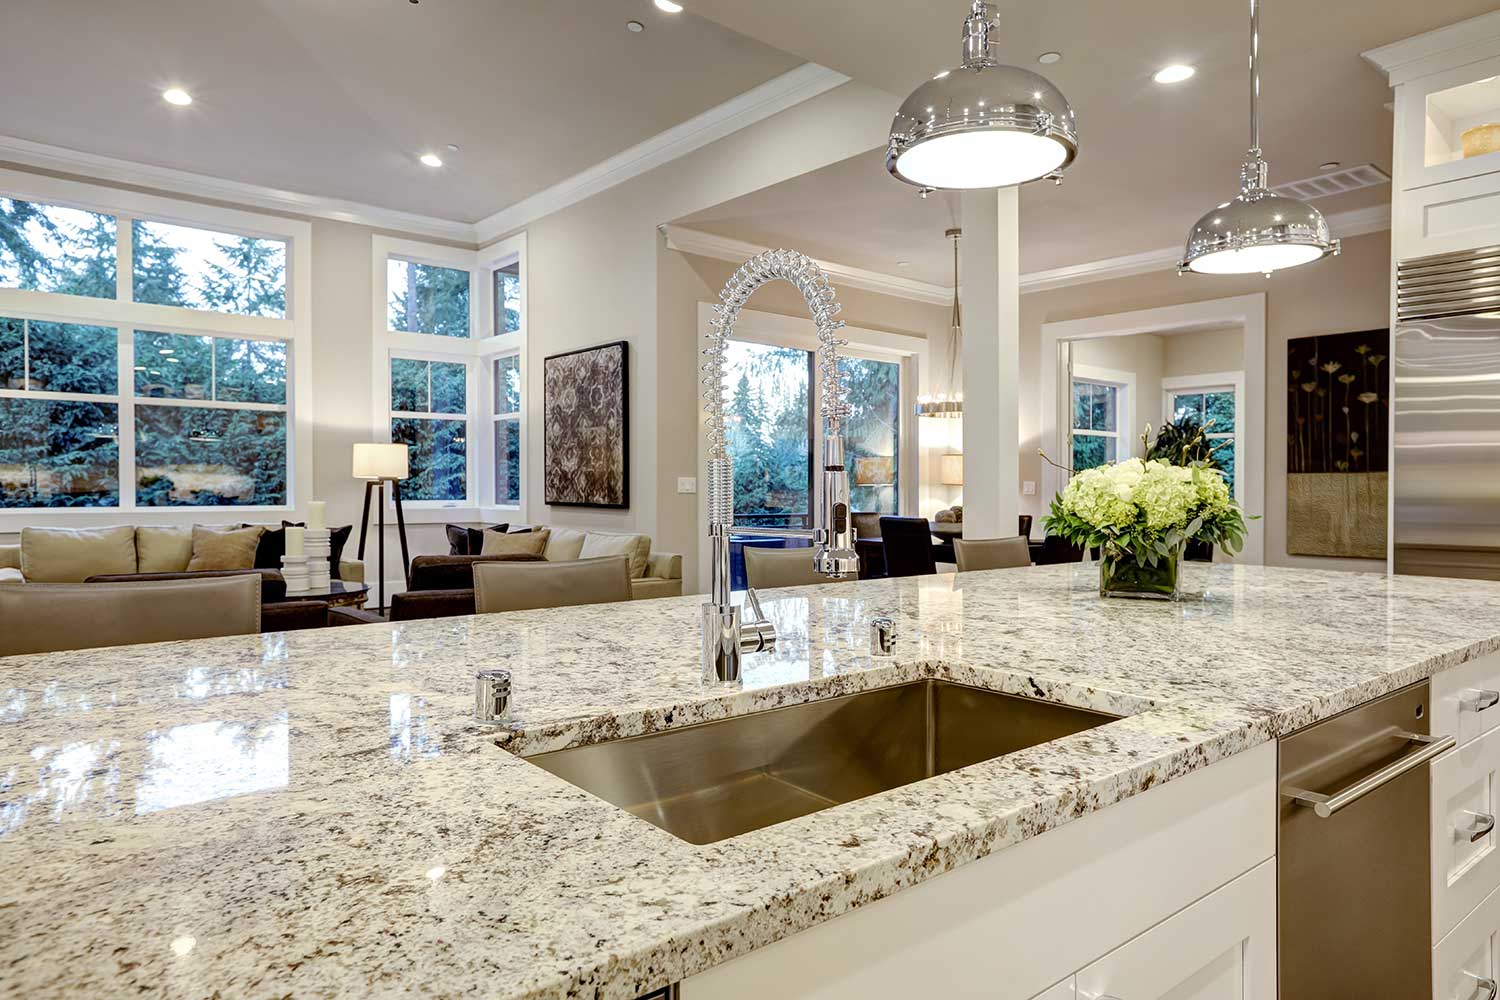 white granite countertops colors